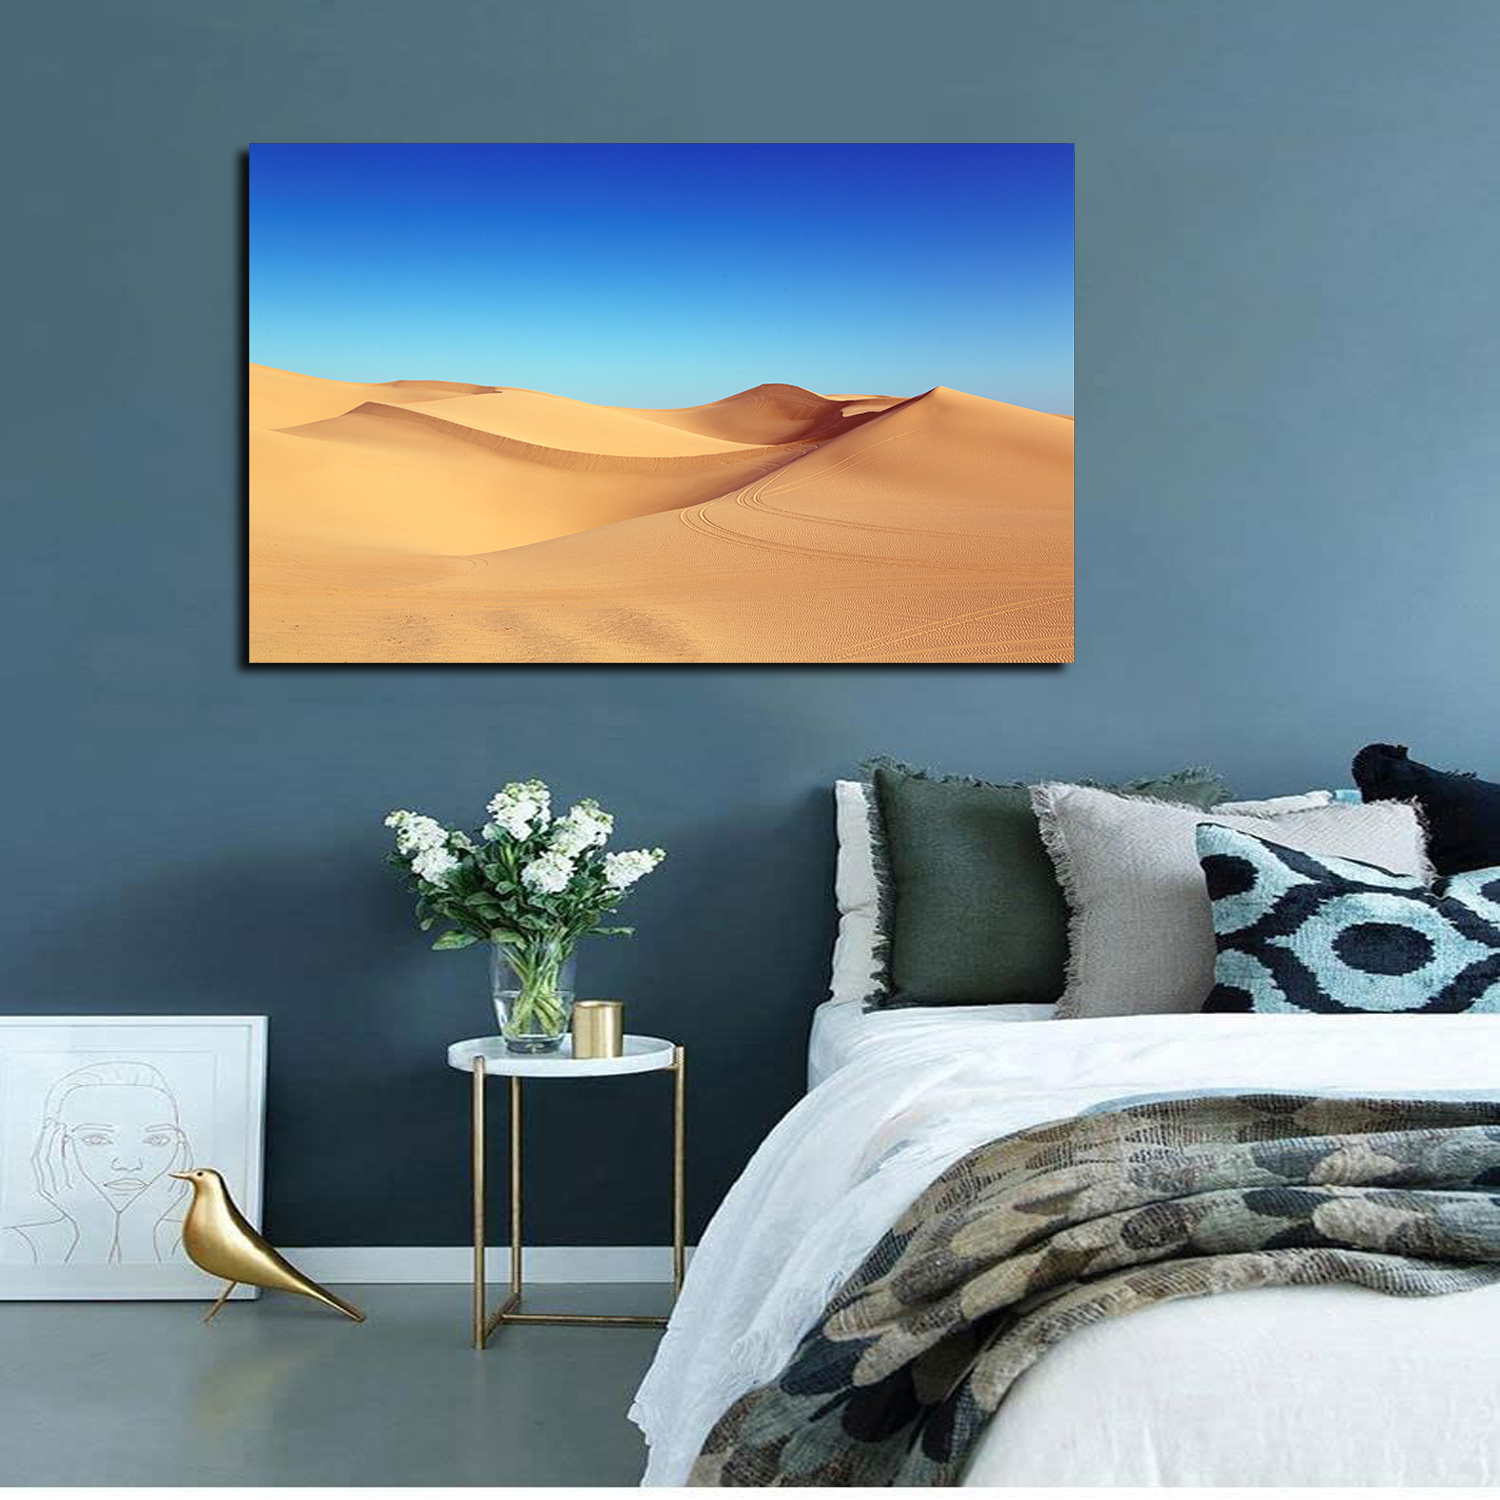 Desert Dunes Blue Sky Wall Art Desert Sunset Picture Canvas Art Sand Dunes Framed  Painting Wall Decor For Home Office Bedroom Livingroom Ready to Hang 